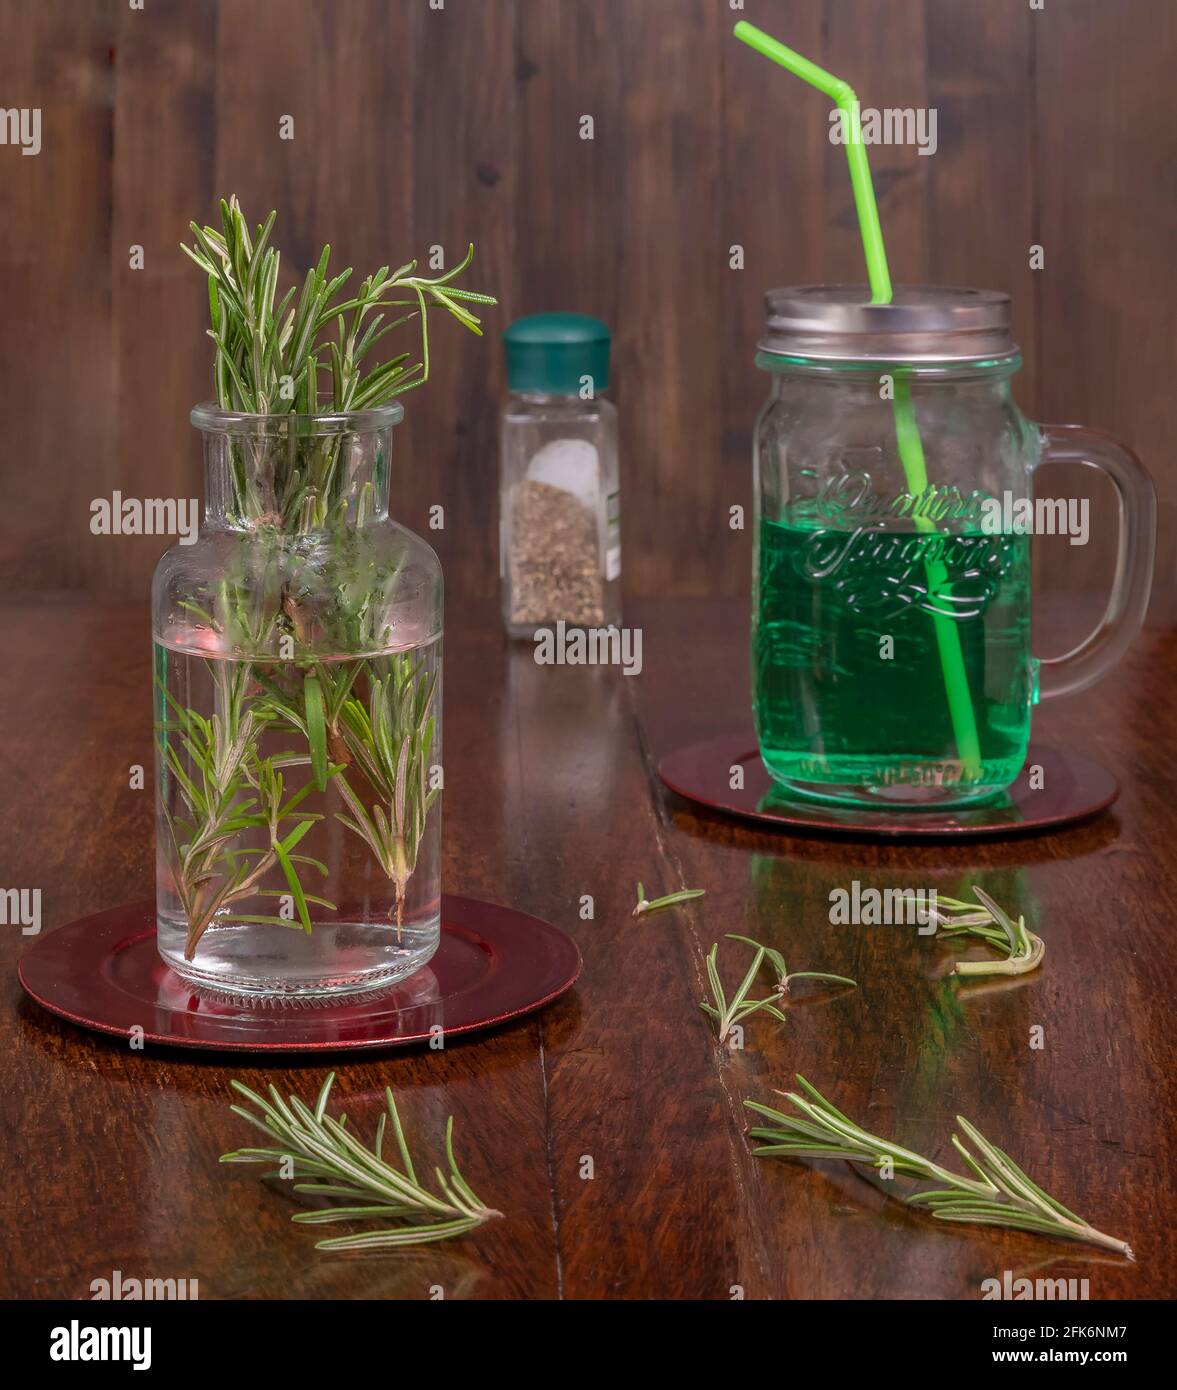 Composición de hierbas aromáticas utilizadas de diversas maneras para cocinar y crear bebidas naturales Foto de stock